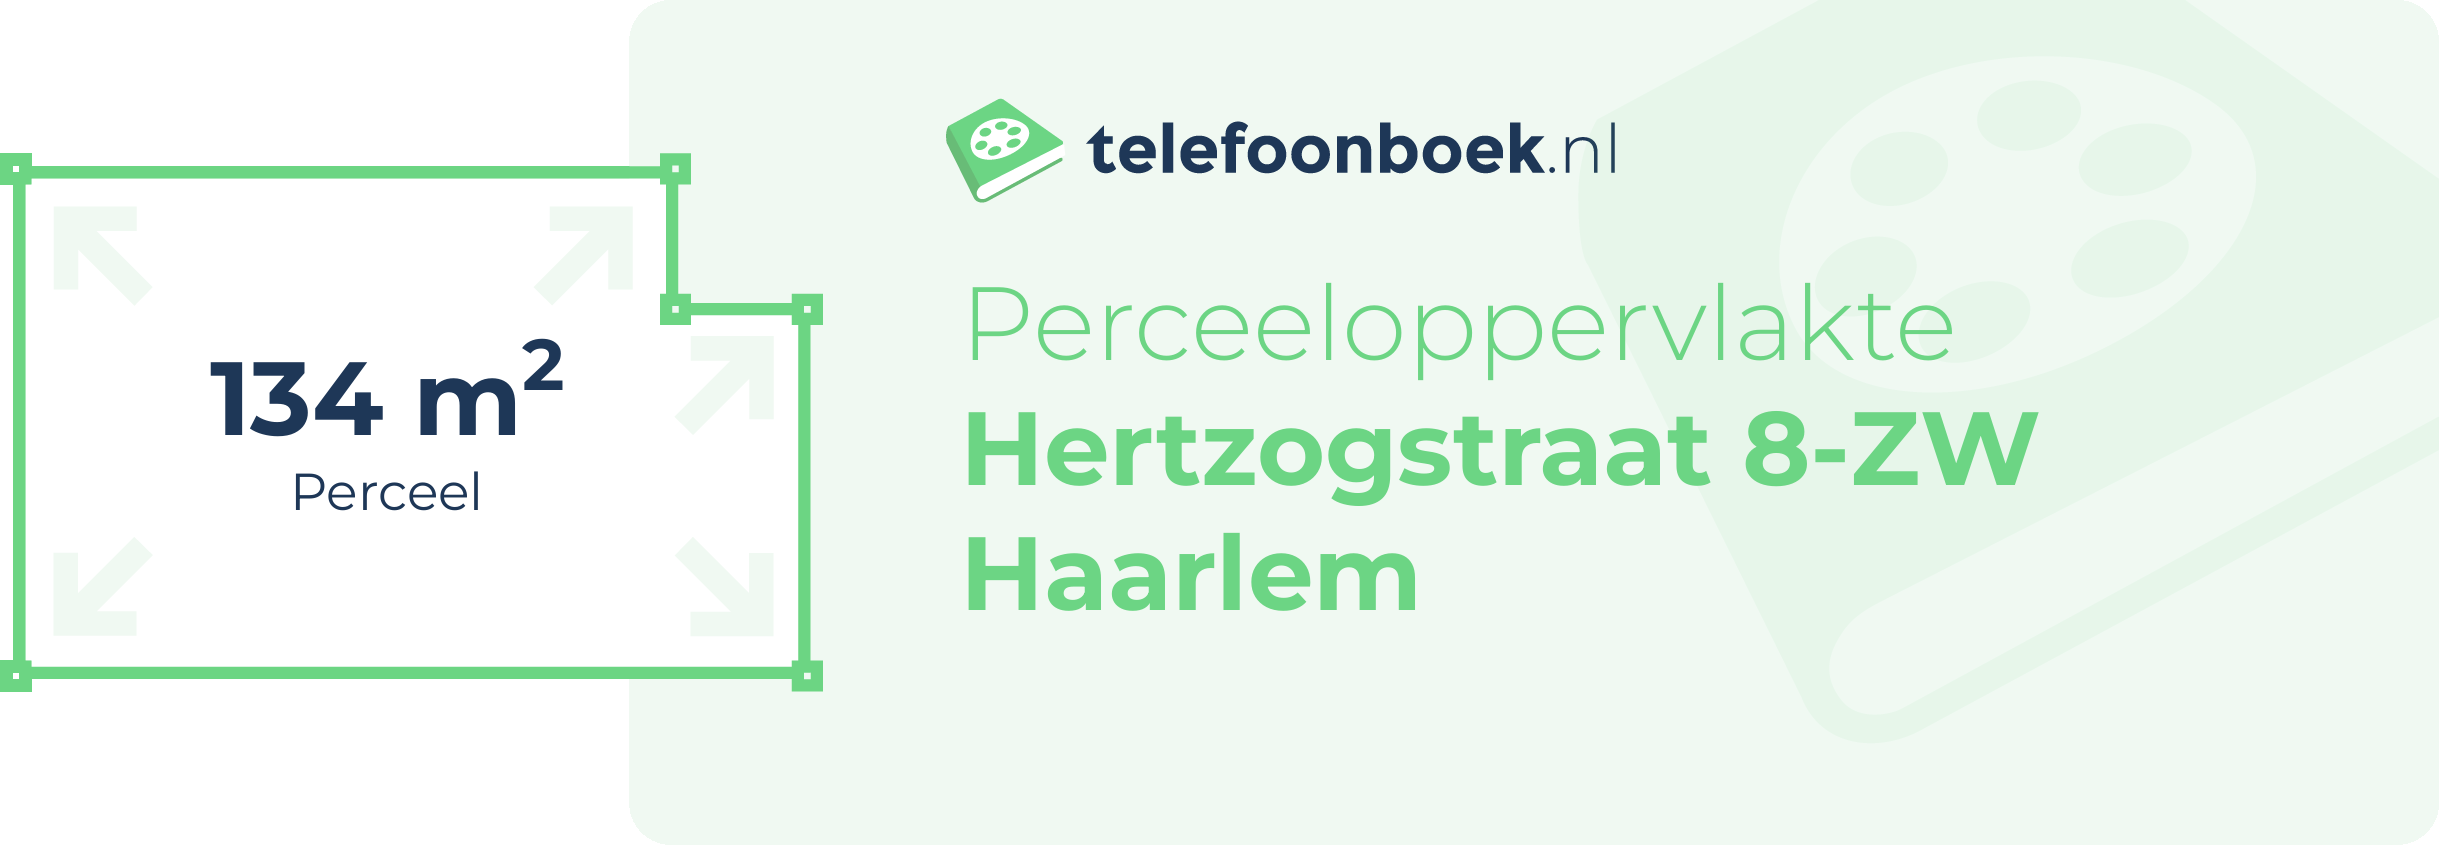 Perceeloppervlakte Hertzogstraat 8-ZW Haarlem